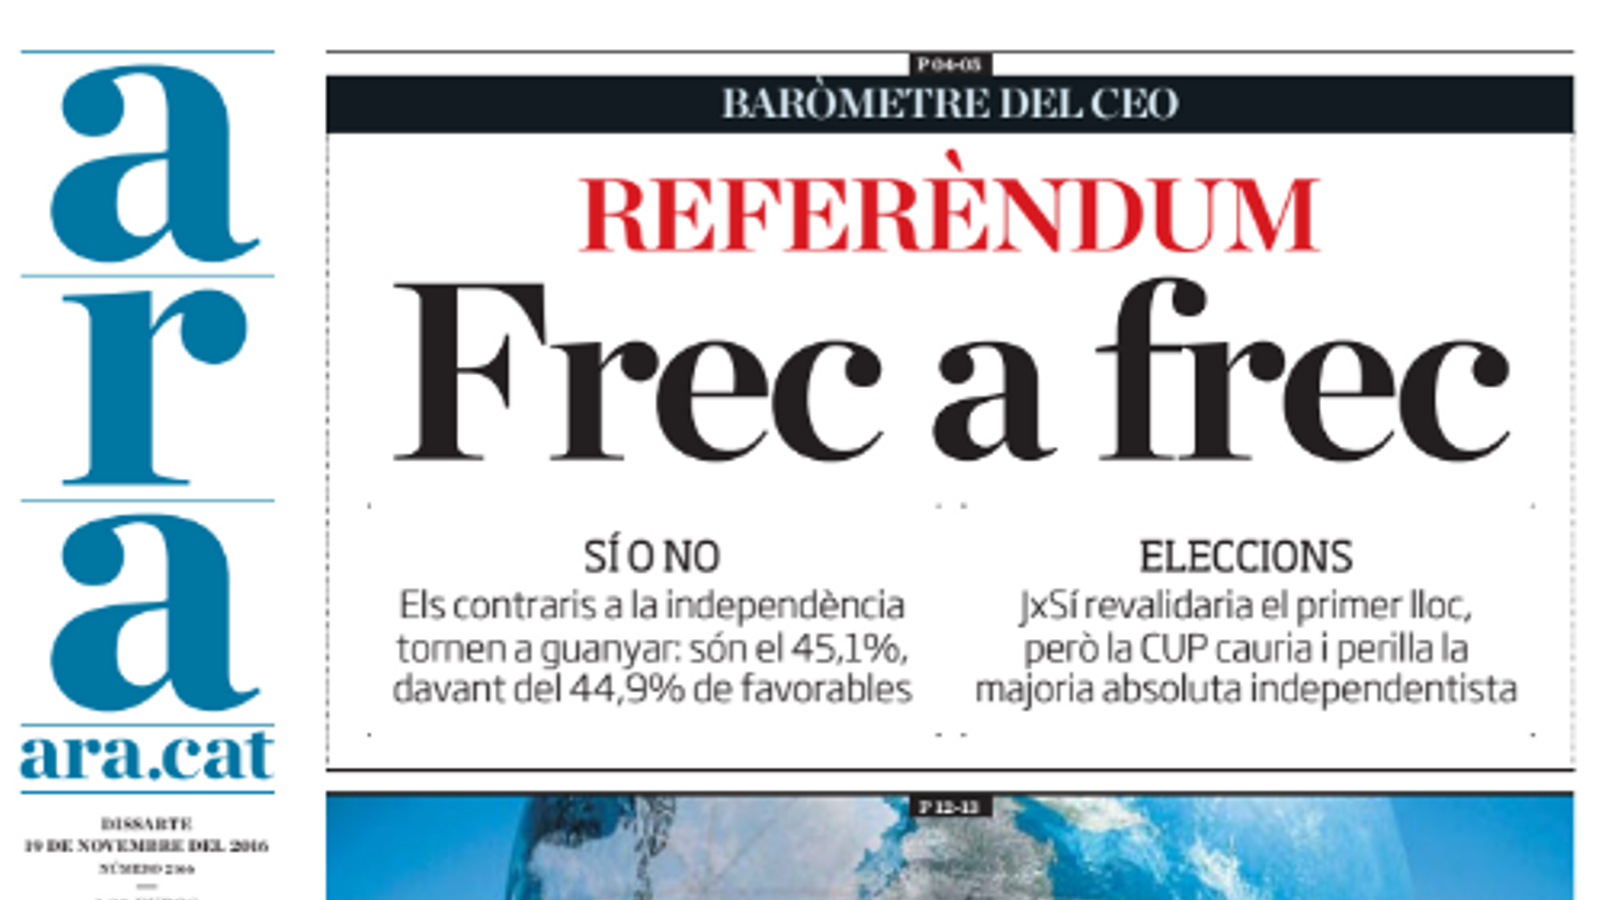 "Referèndum: frec a frec", portada de l'ARA d'aquest dissabte